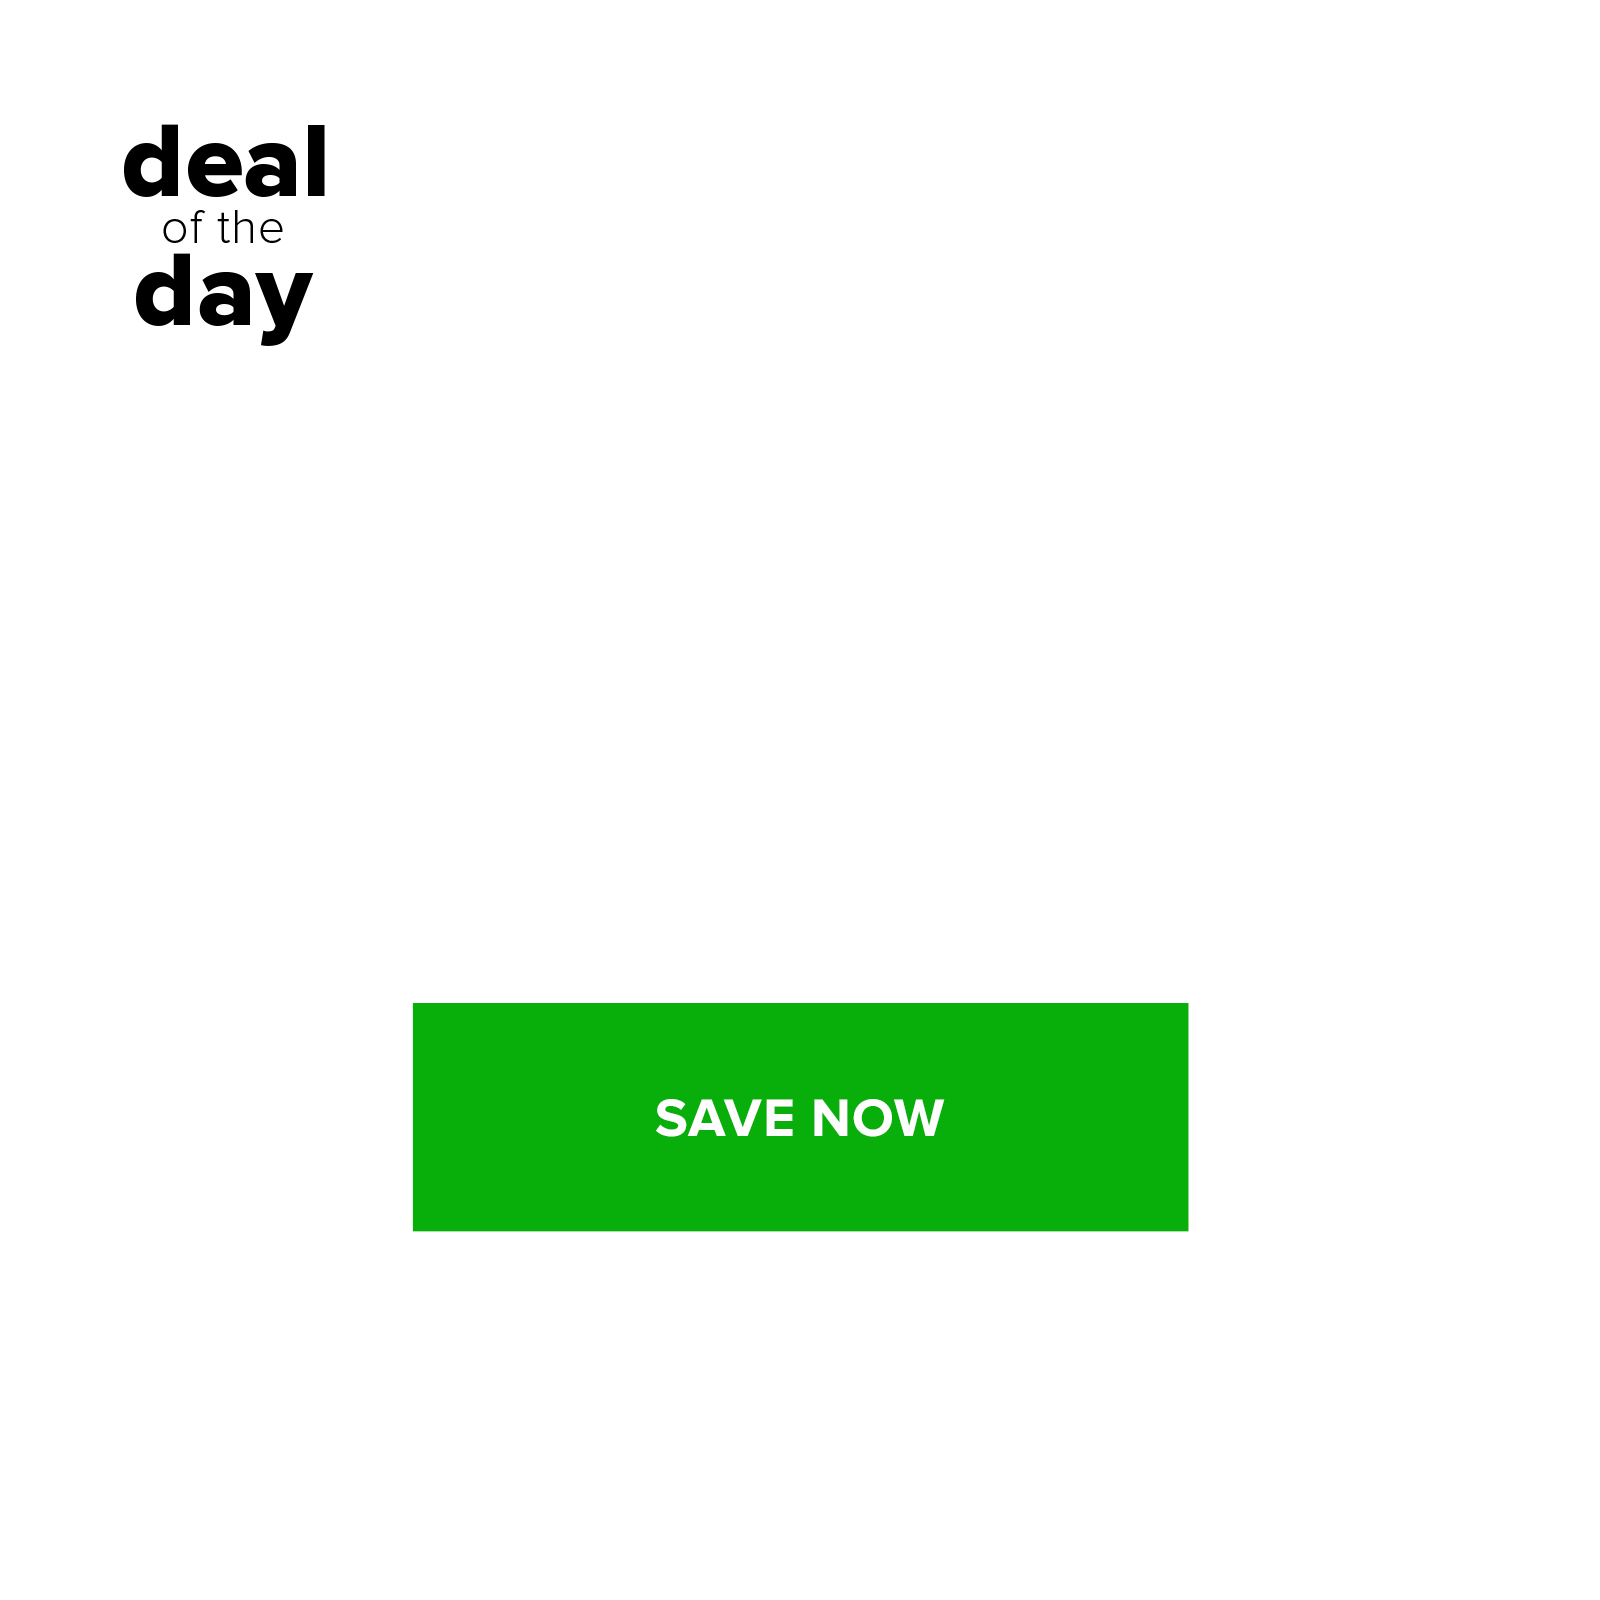 yoga for beginner's deal of the day kit